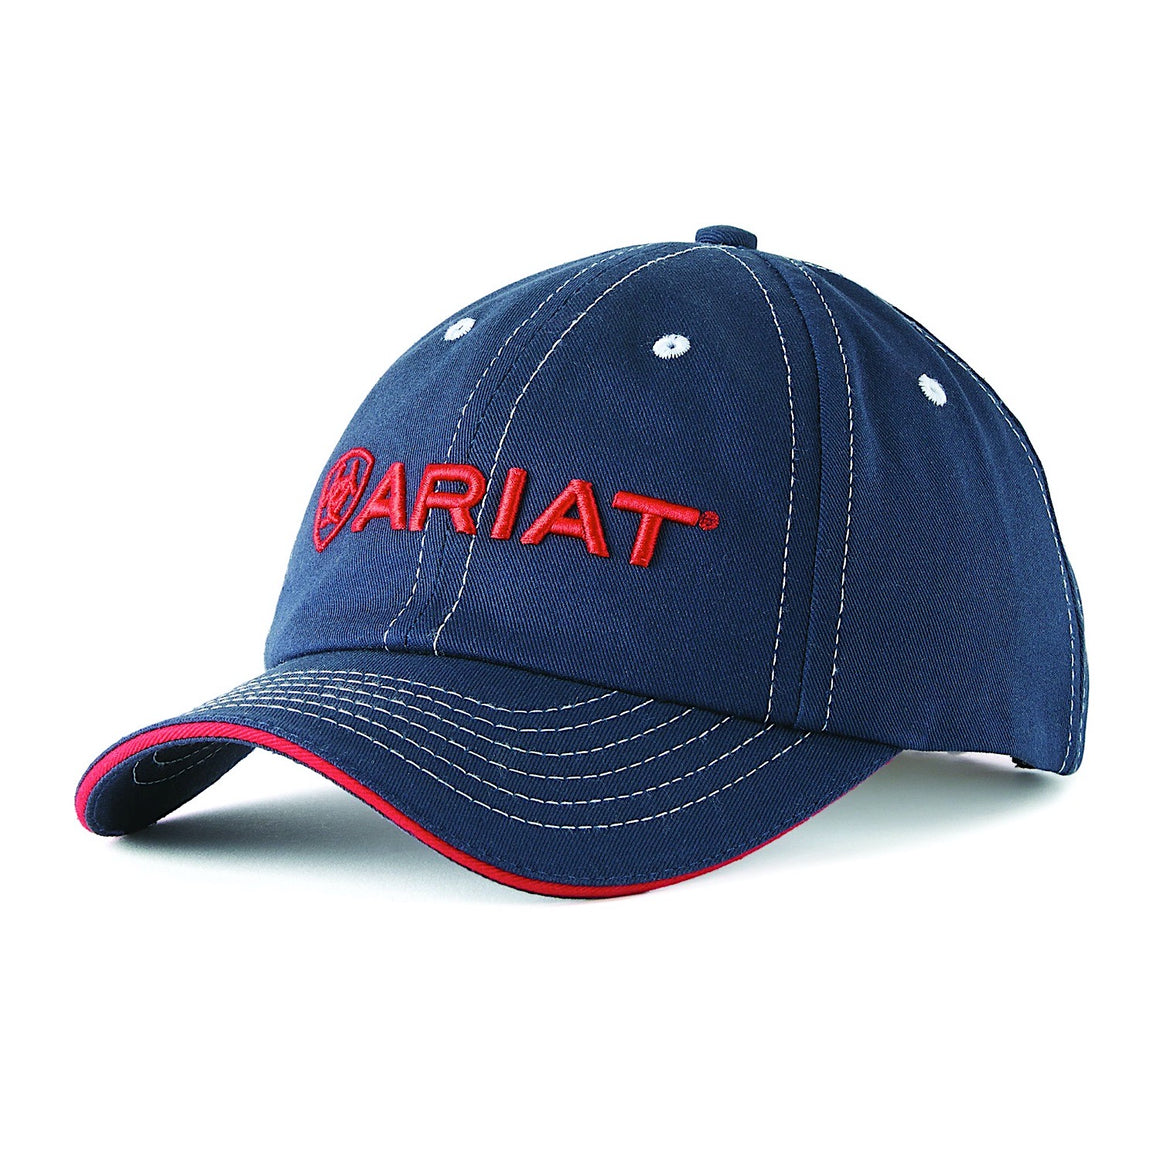 Ariat Team II Cap Navy/Red